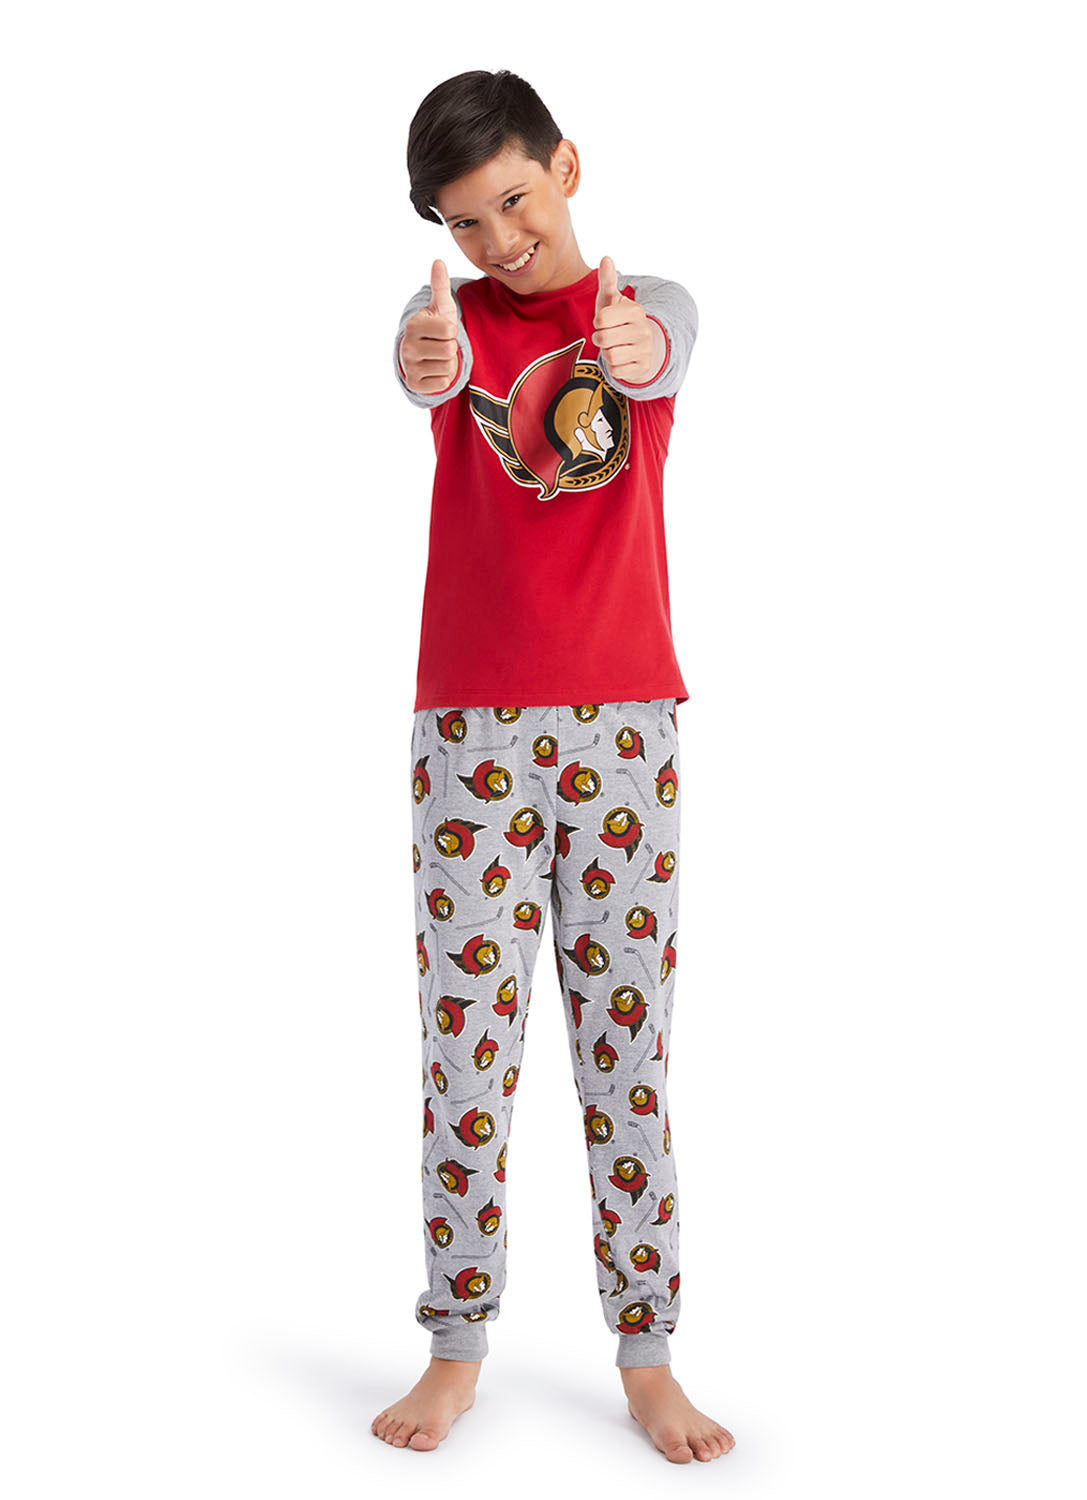 Fun Boy wearing Ottawa Senators Pajama Set